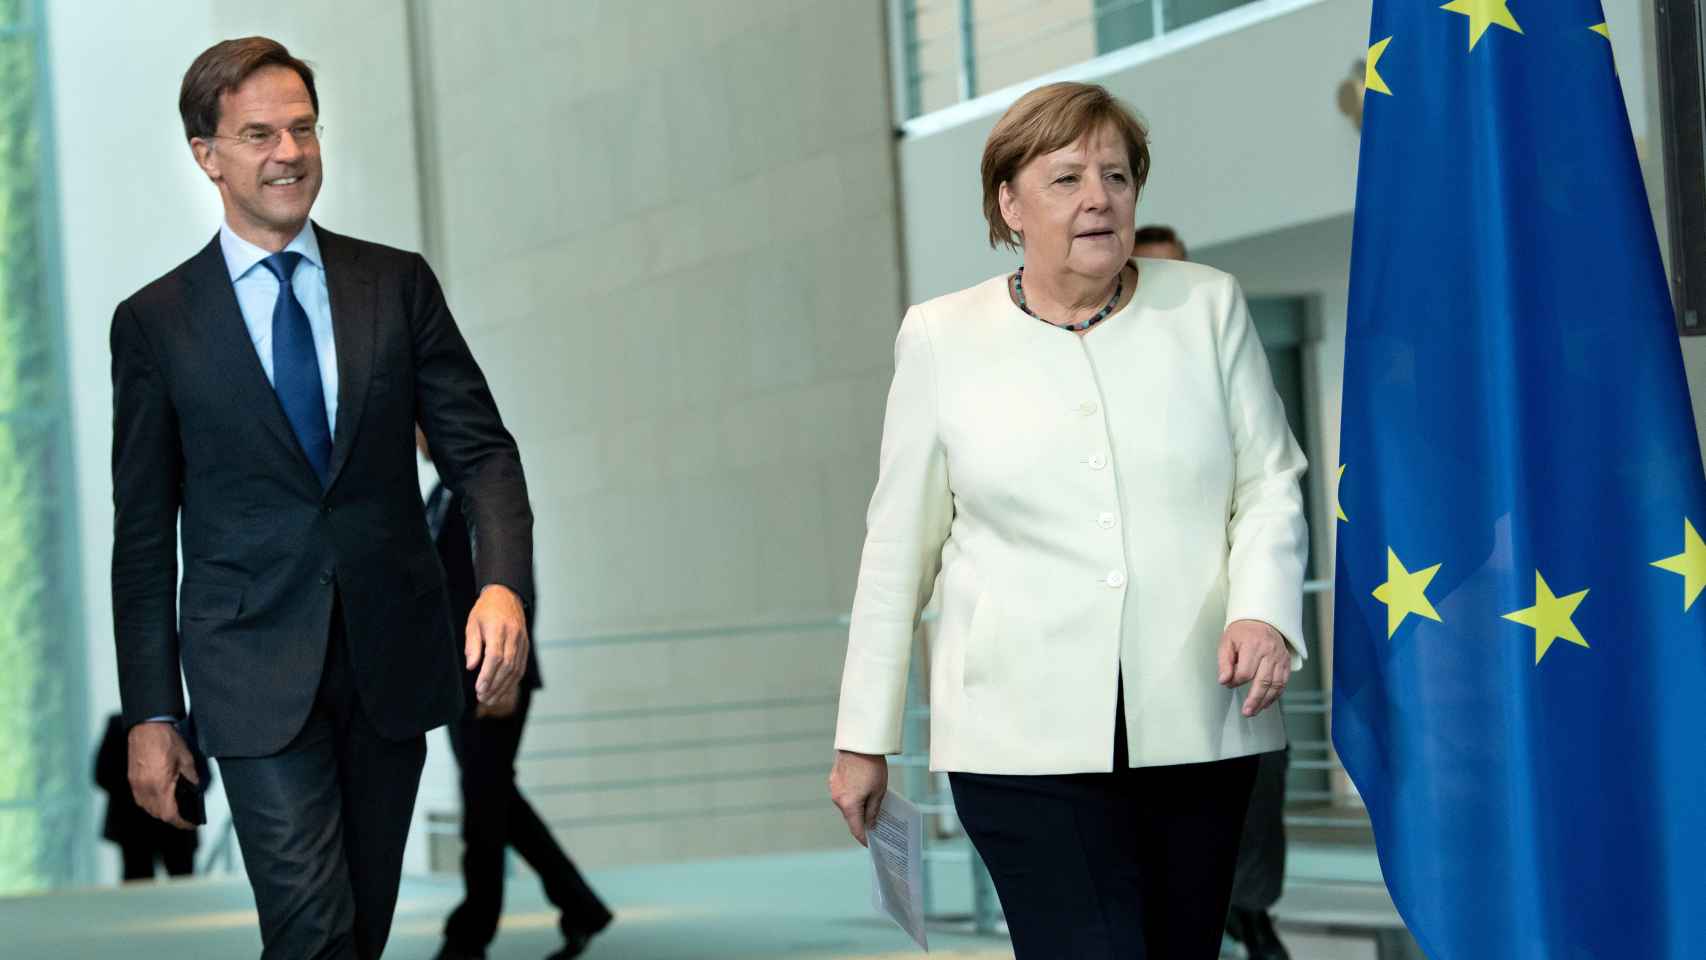 Mark Rutte se ha reunido este jueves en Berlín con Angela Merkel